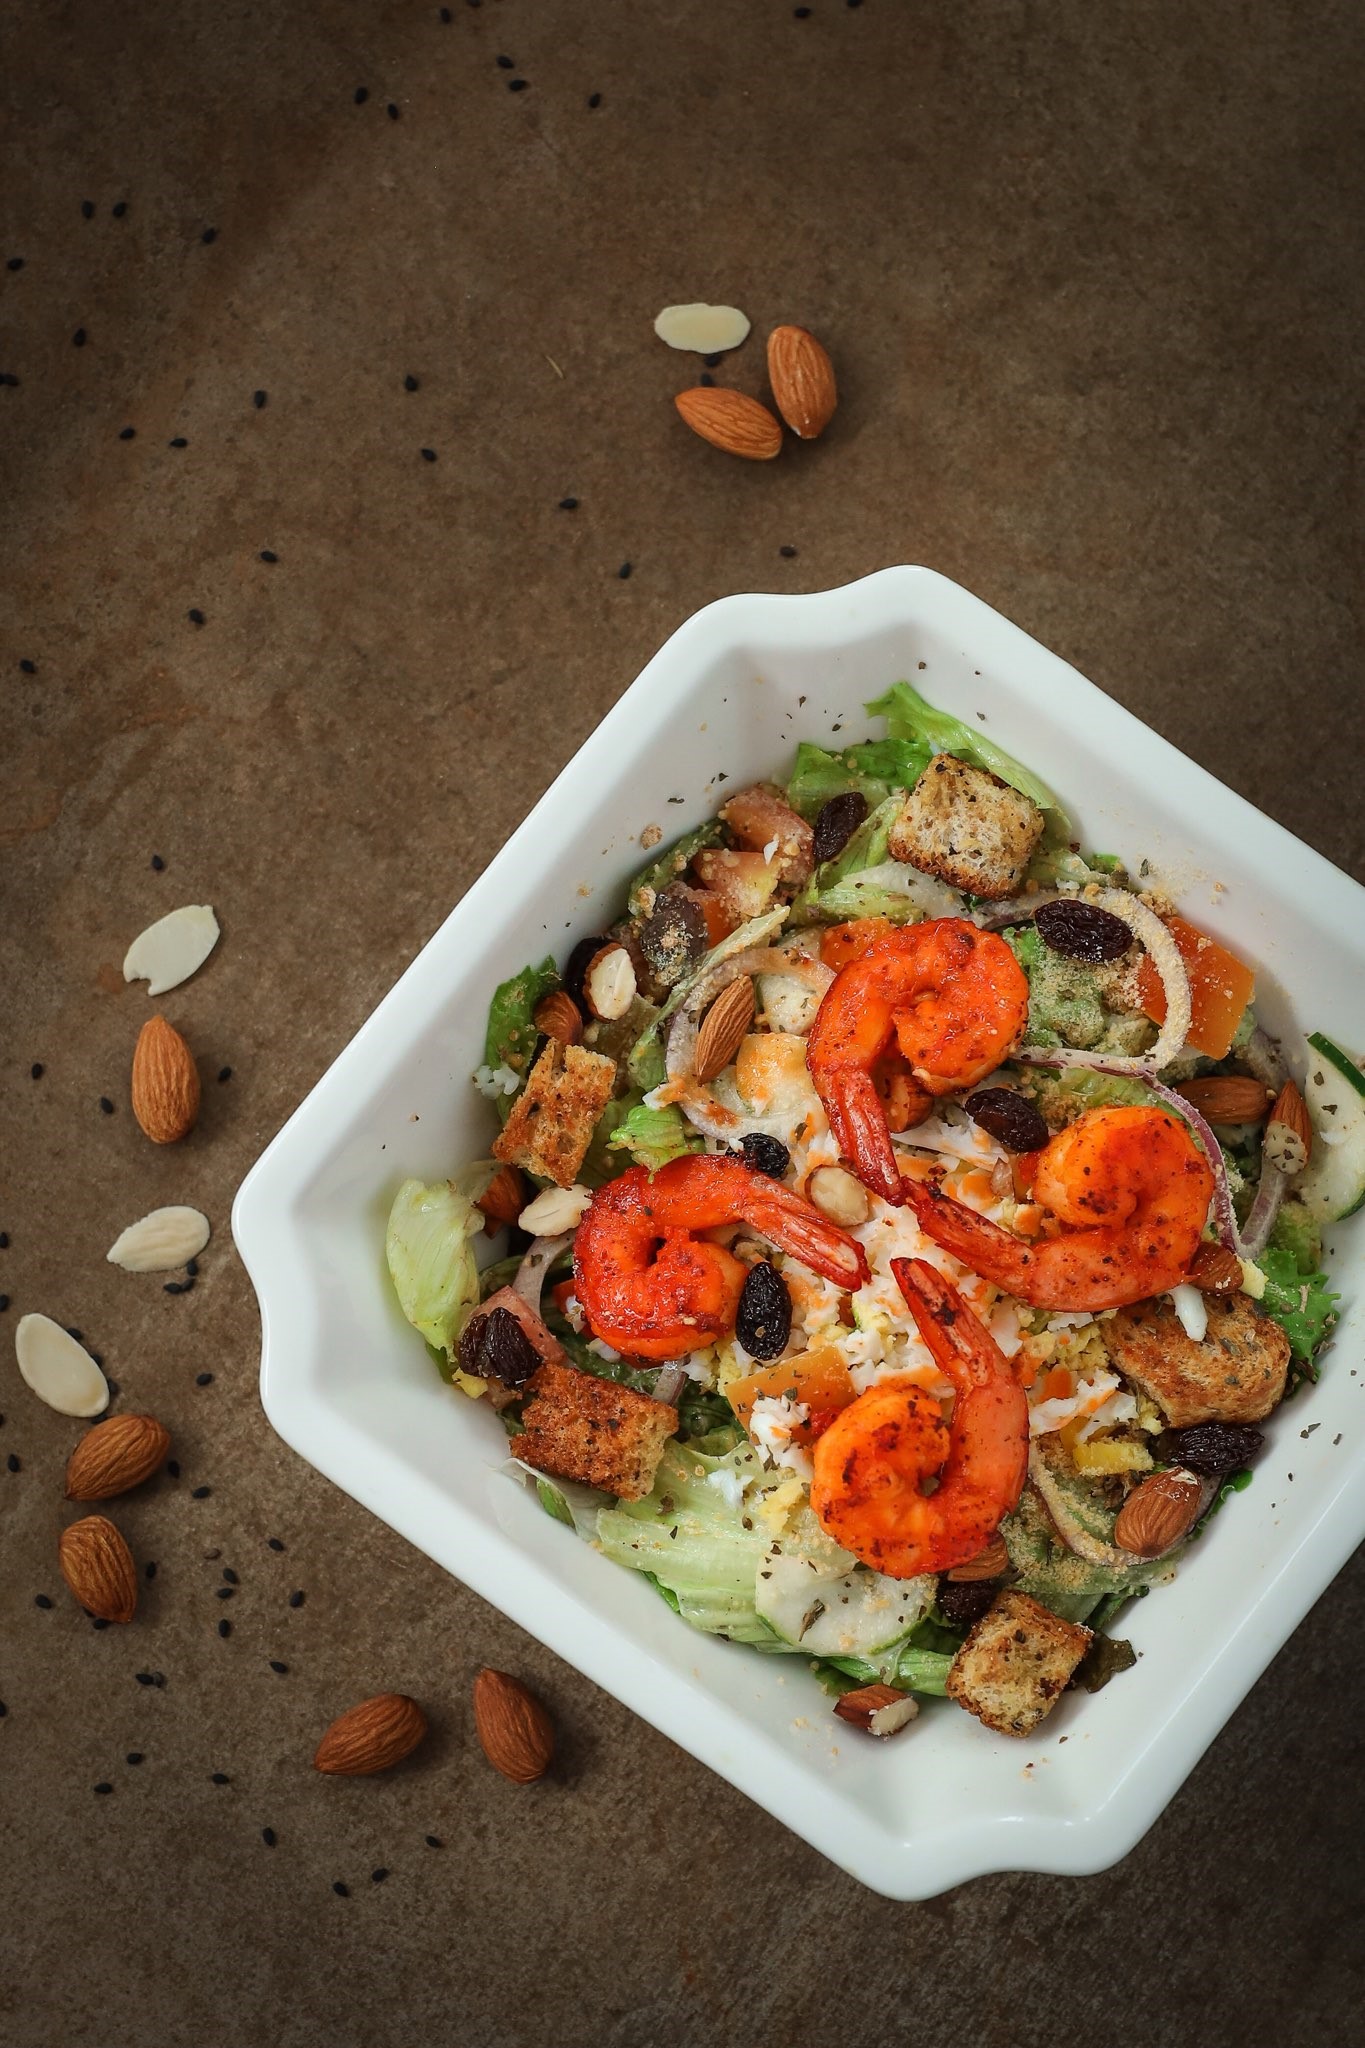 Caesar Salad with Shrimp (P239)